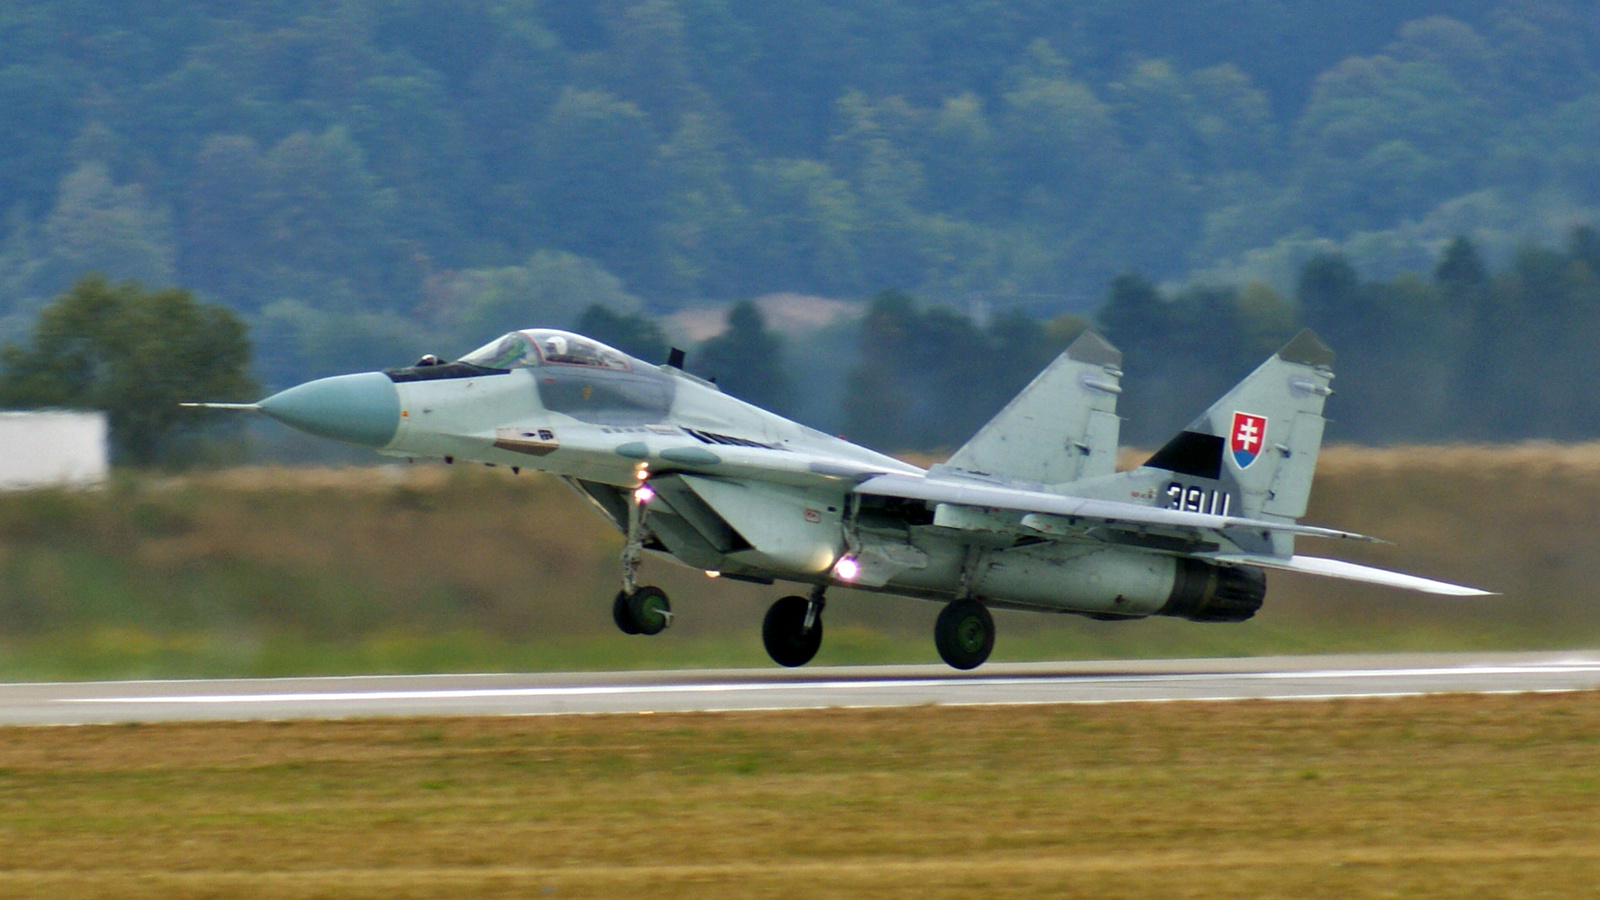 Mikoyan-Gurevich MiG-29AS (3911)